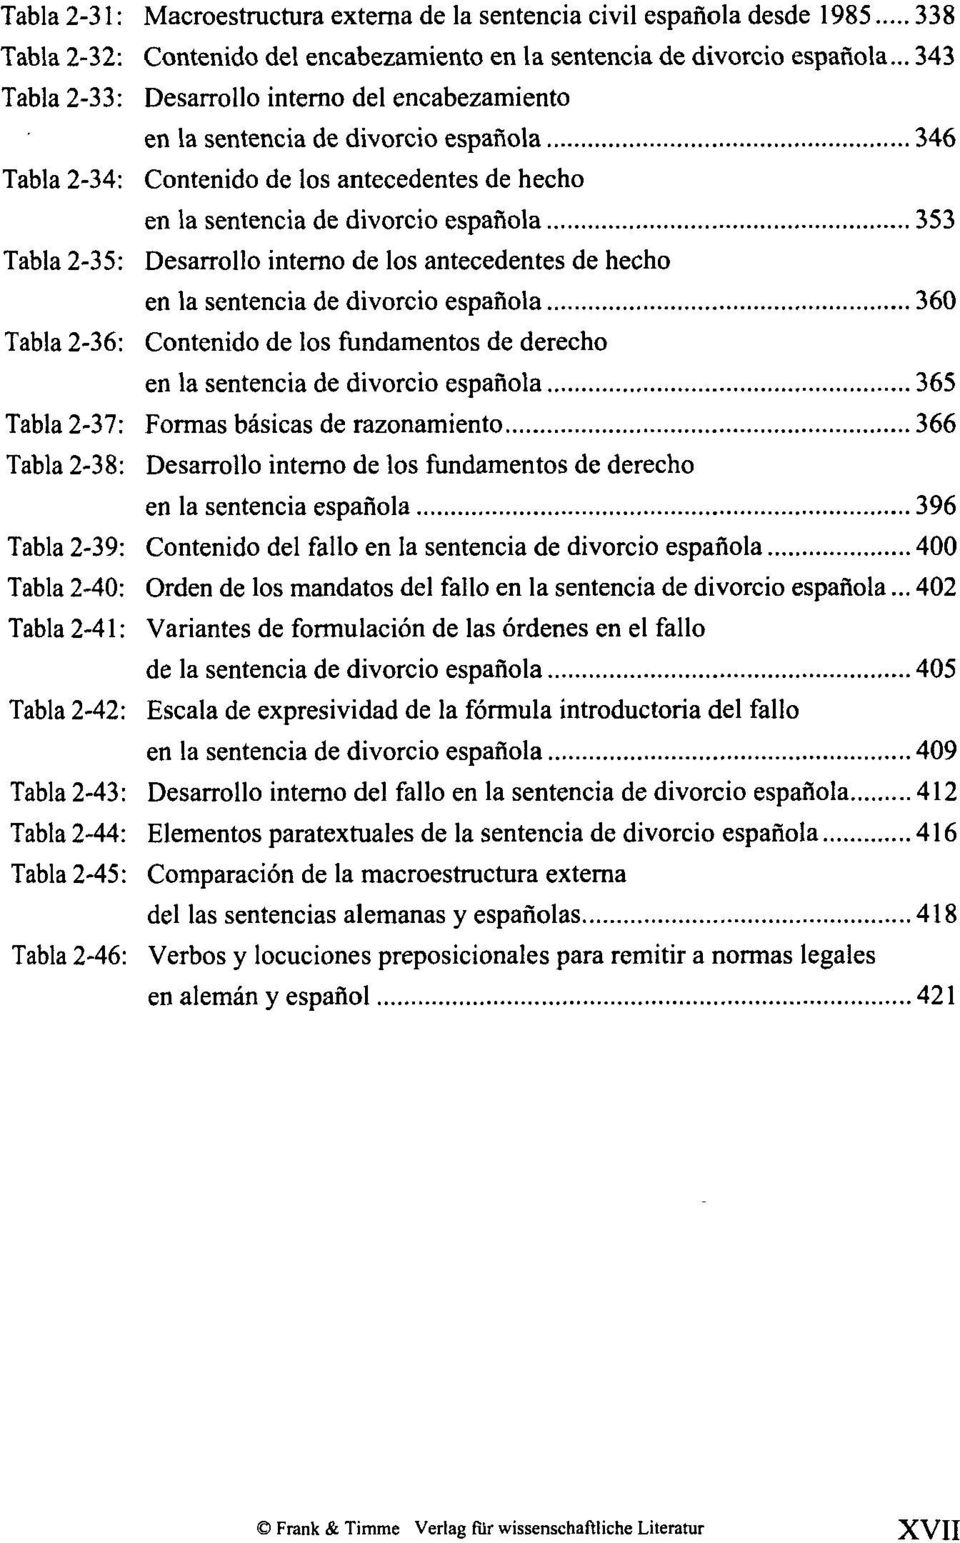 2-35: Desarrollo interno de los antecedentes de hecho en la sentencia de divorcio española 360 Tabla 2-36: Contenido de los fundamentos de derecho en la sentencia de divorcio española 365 Tabla 2-37: